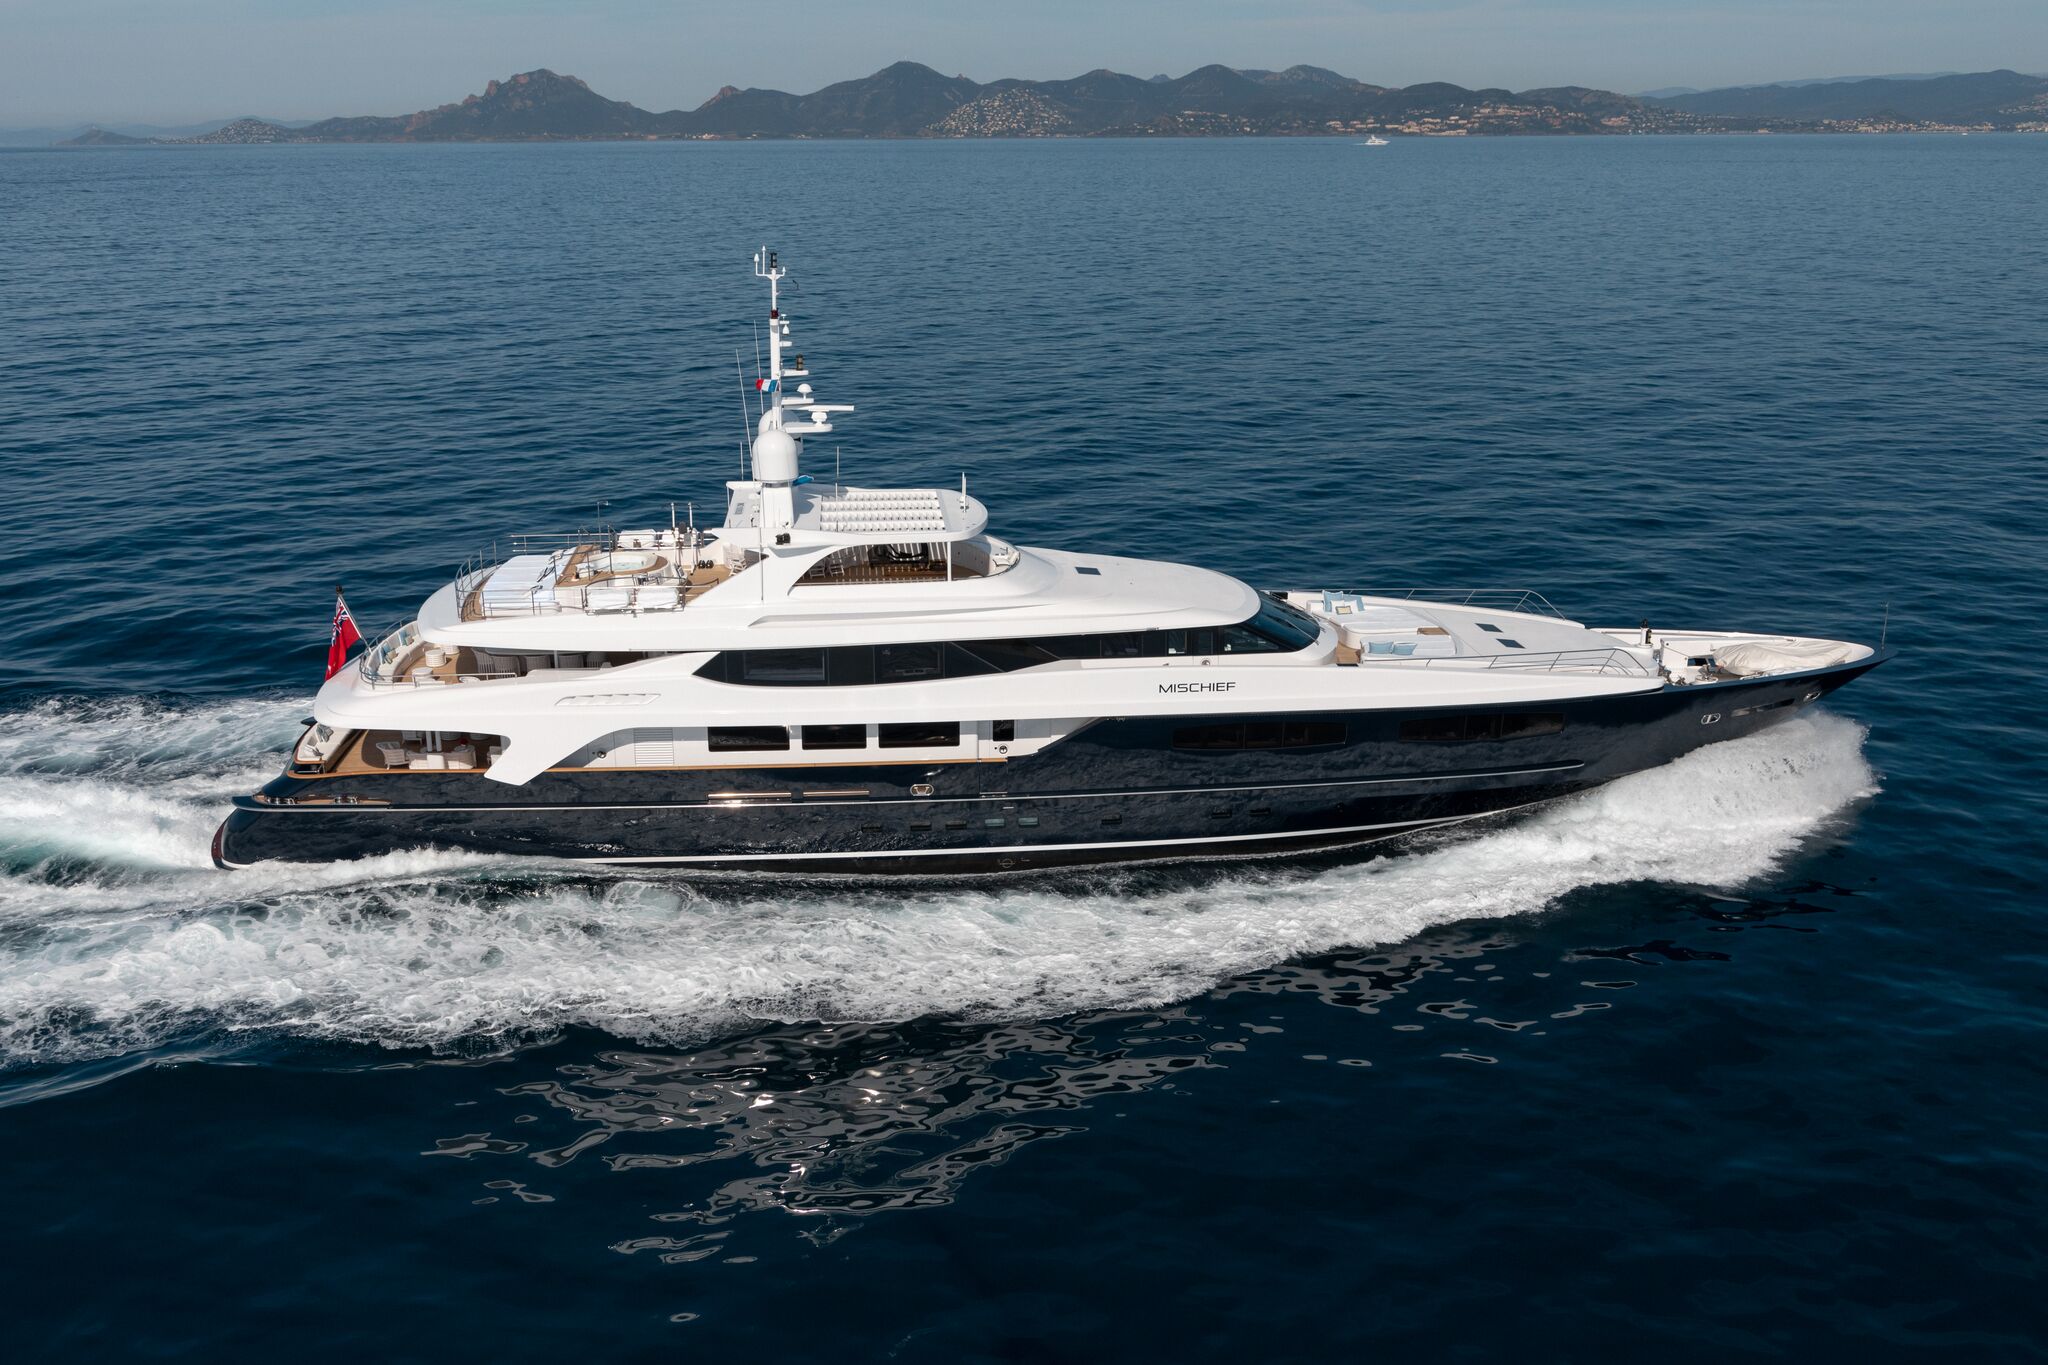 Mischief Super Yacht - Luxury Marine Charter